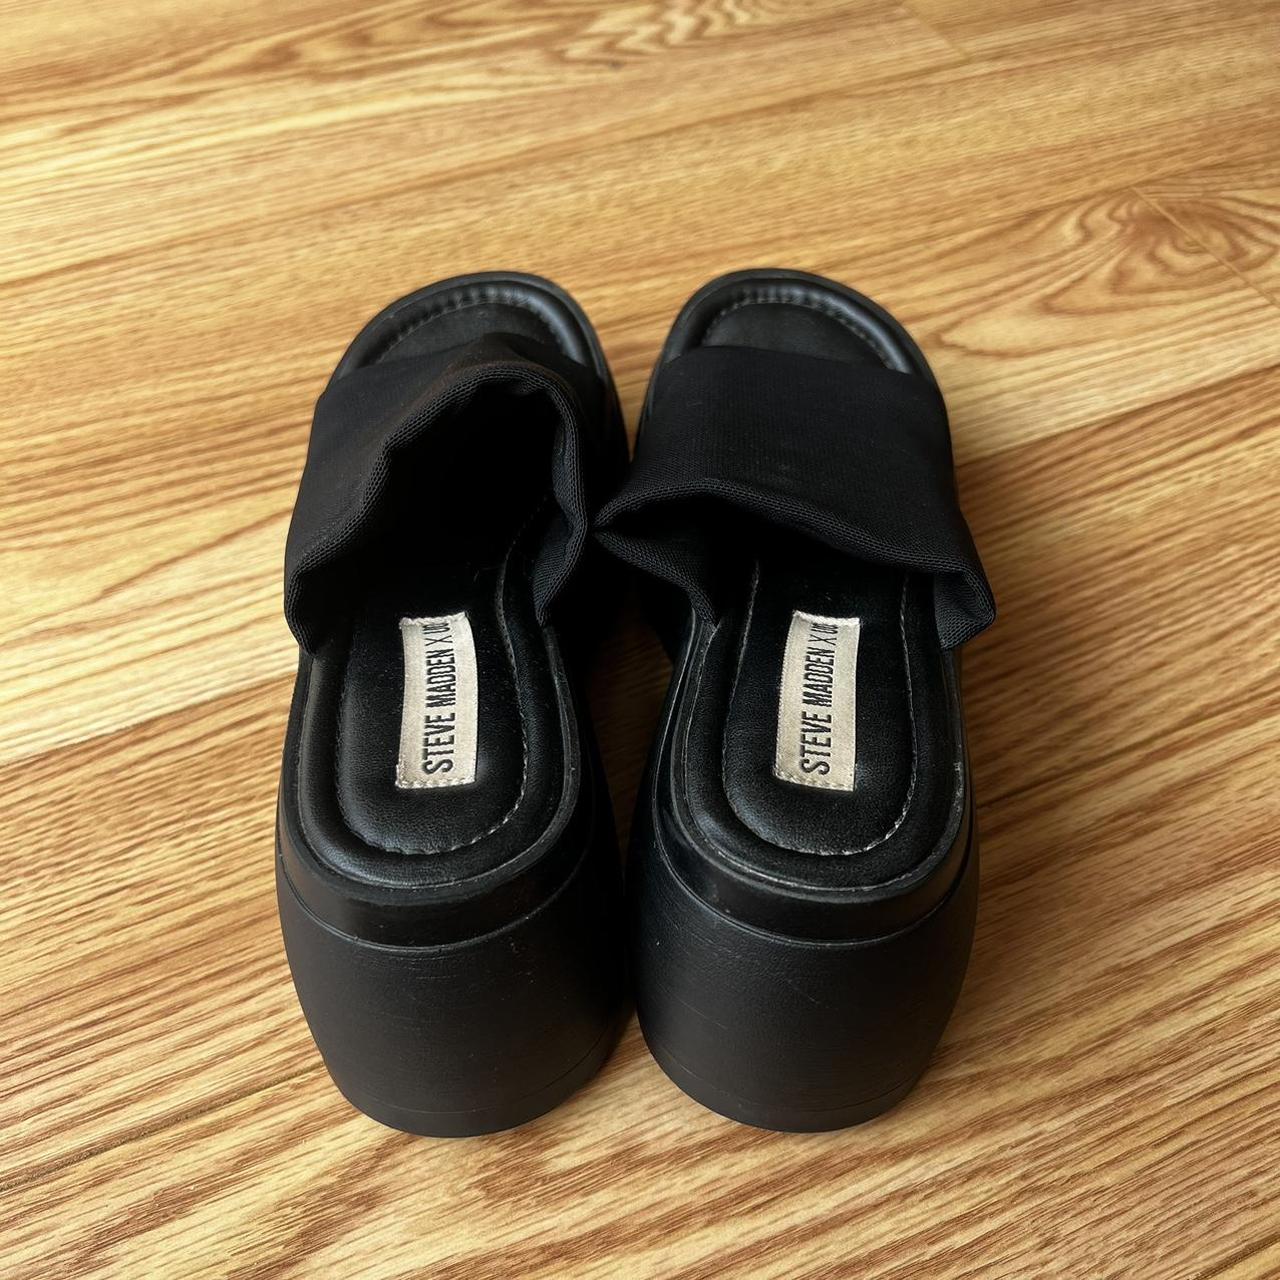 Steve Madden X UO black platform sandals adorable... - Depop